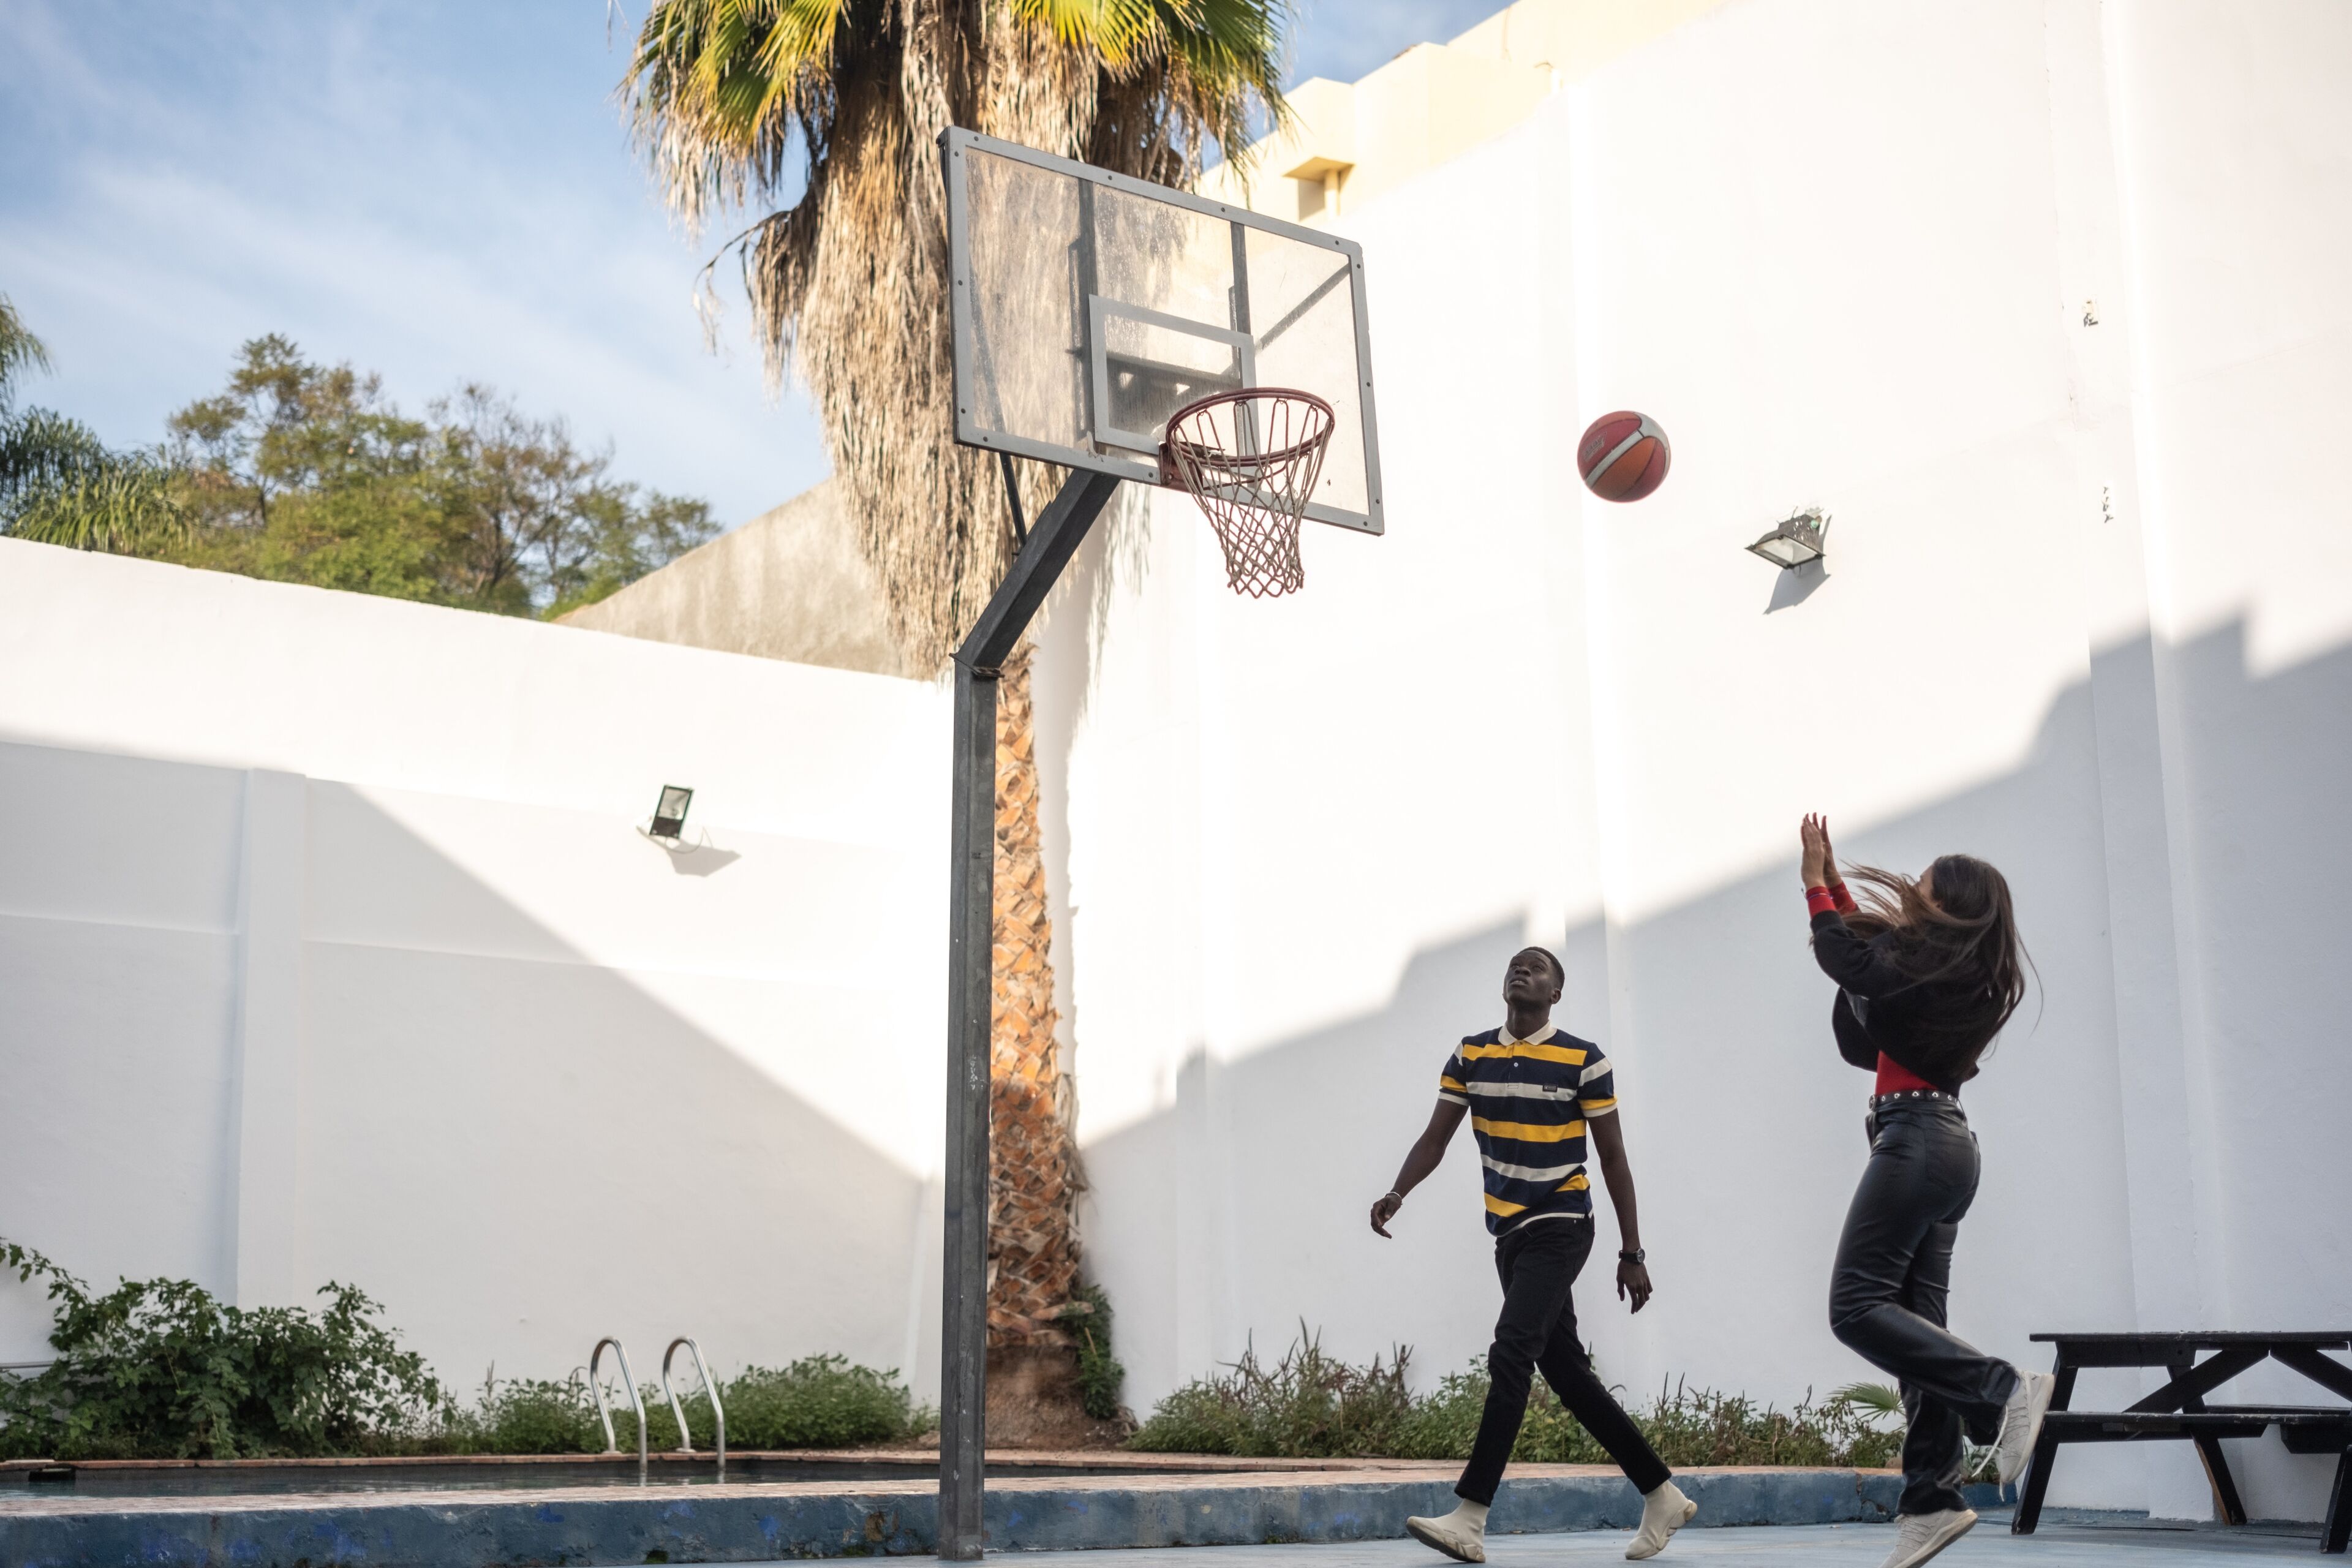 Deux personnes jouent au basketball dans un terrain extérieur, l'une tire le ballon vers le panier.